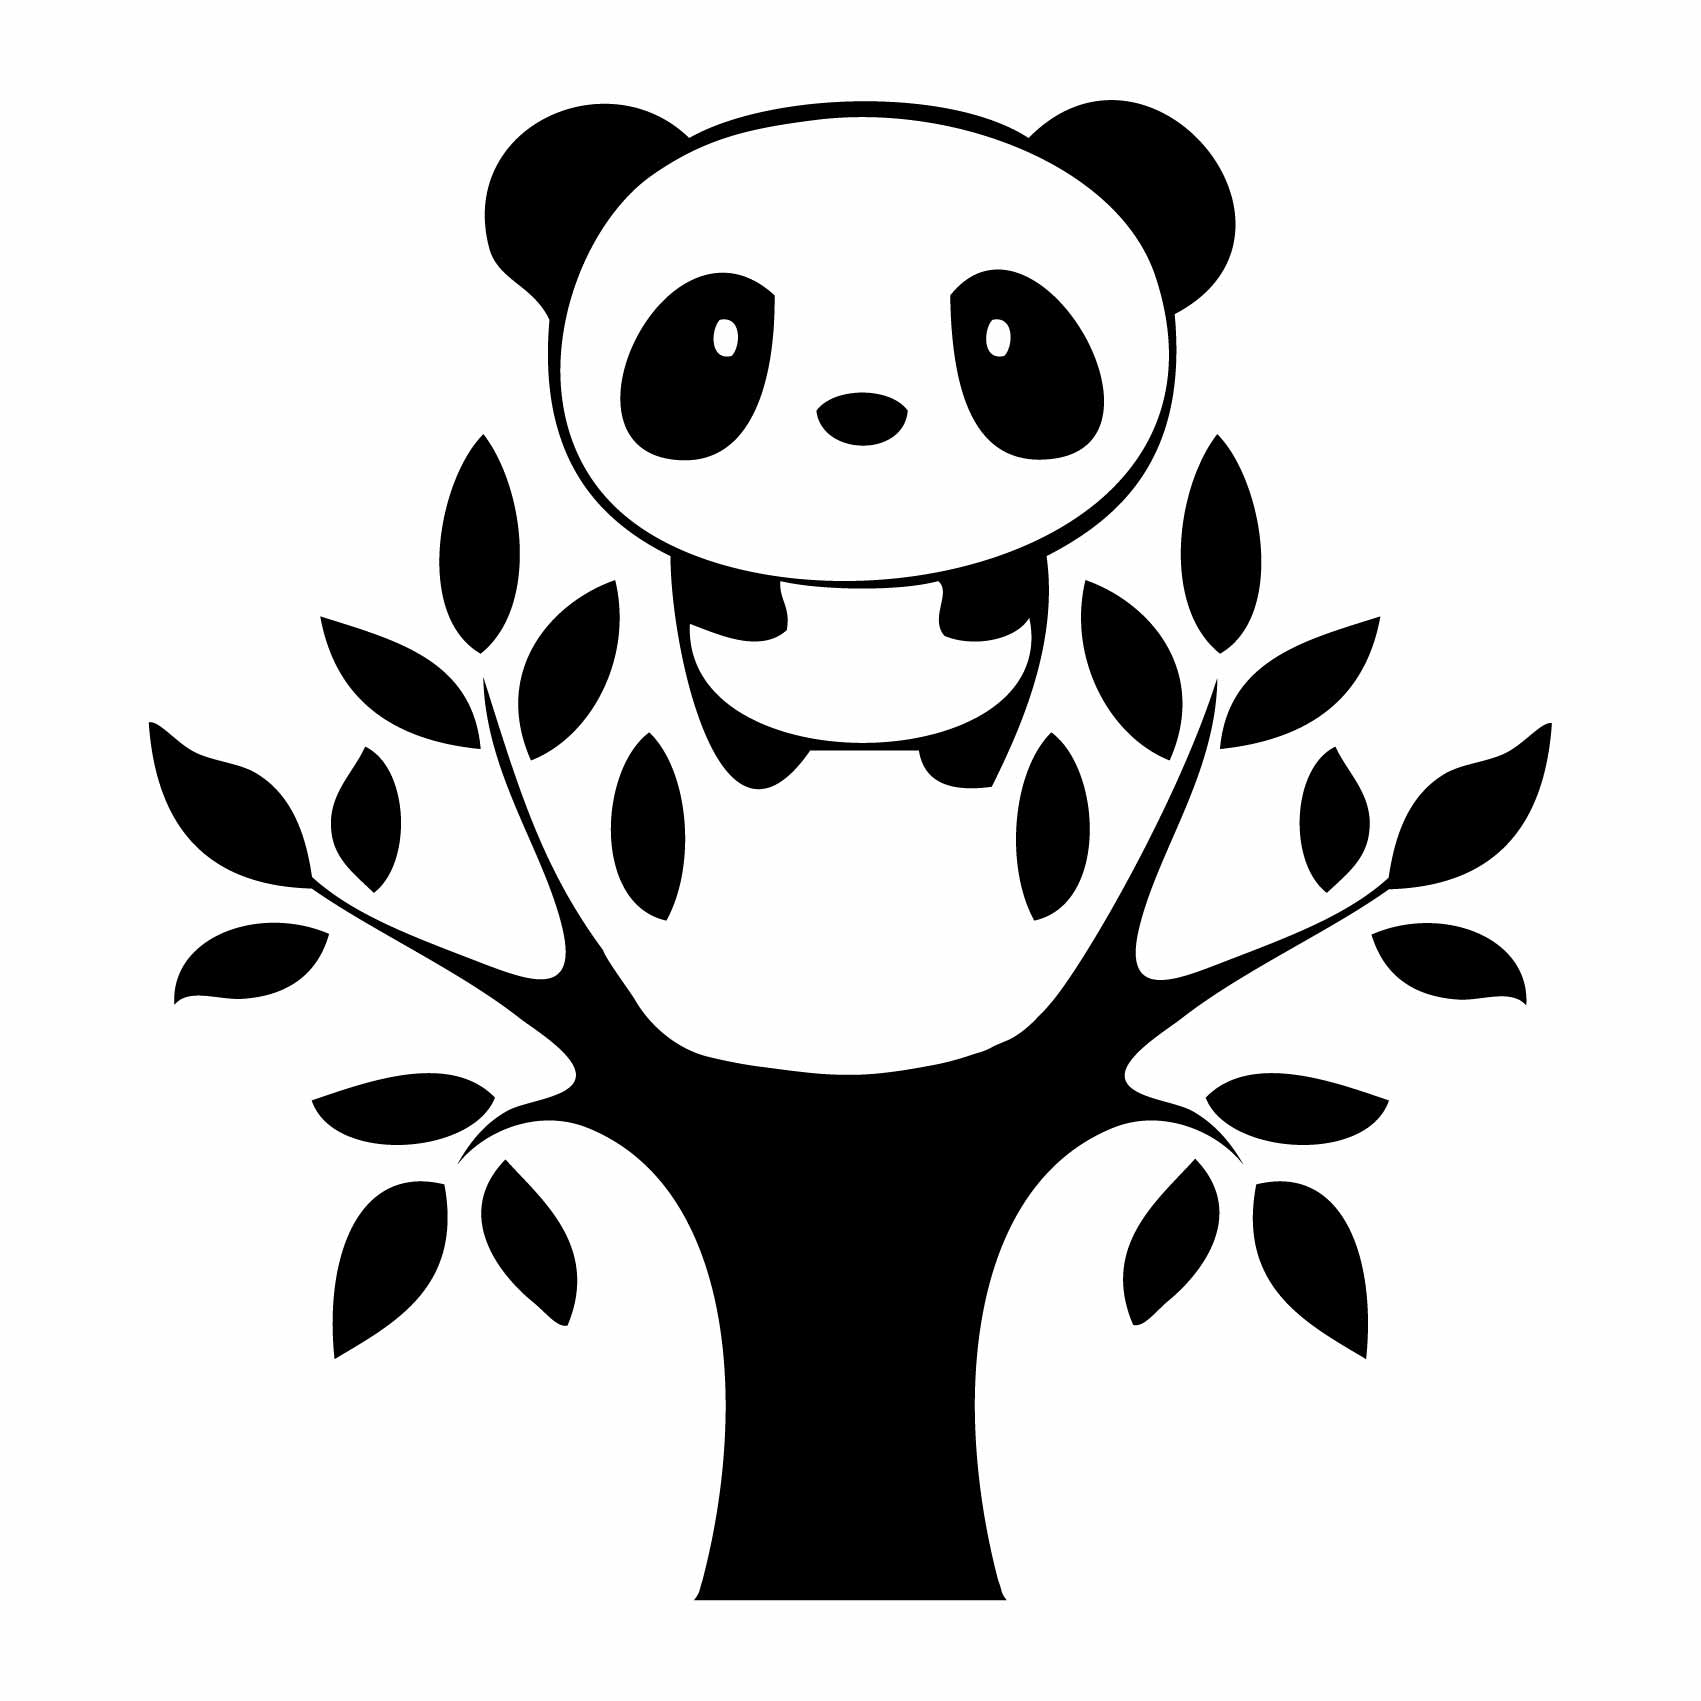 stickers-panda-arbre-ref9panda-stickers-muraux-panda-autocollant-deco-chambre-enfant-bébé-fille-garçon-sticker-mural-pandas-(2)